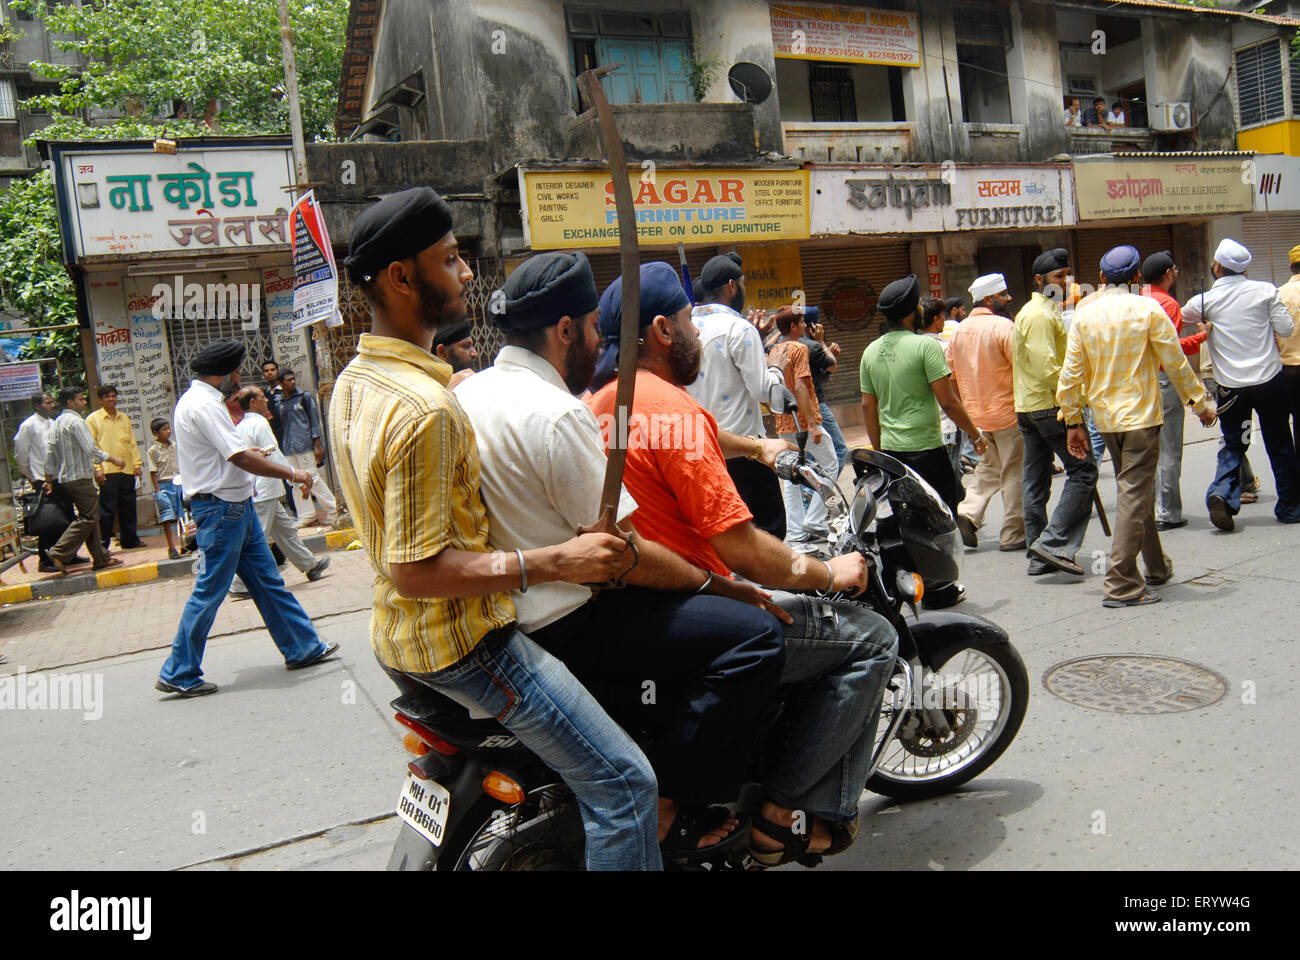 Comunità Sikh protestare contro la guardia del corpo di cottura di dera saccha sauda chief ram rahim a Mulund in Mumbai Bombay Foto Stock